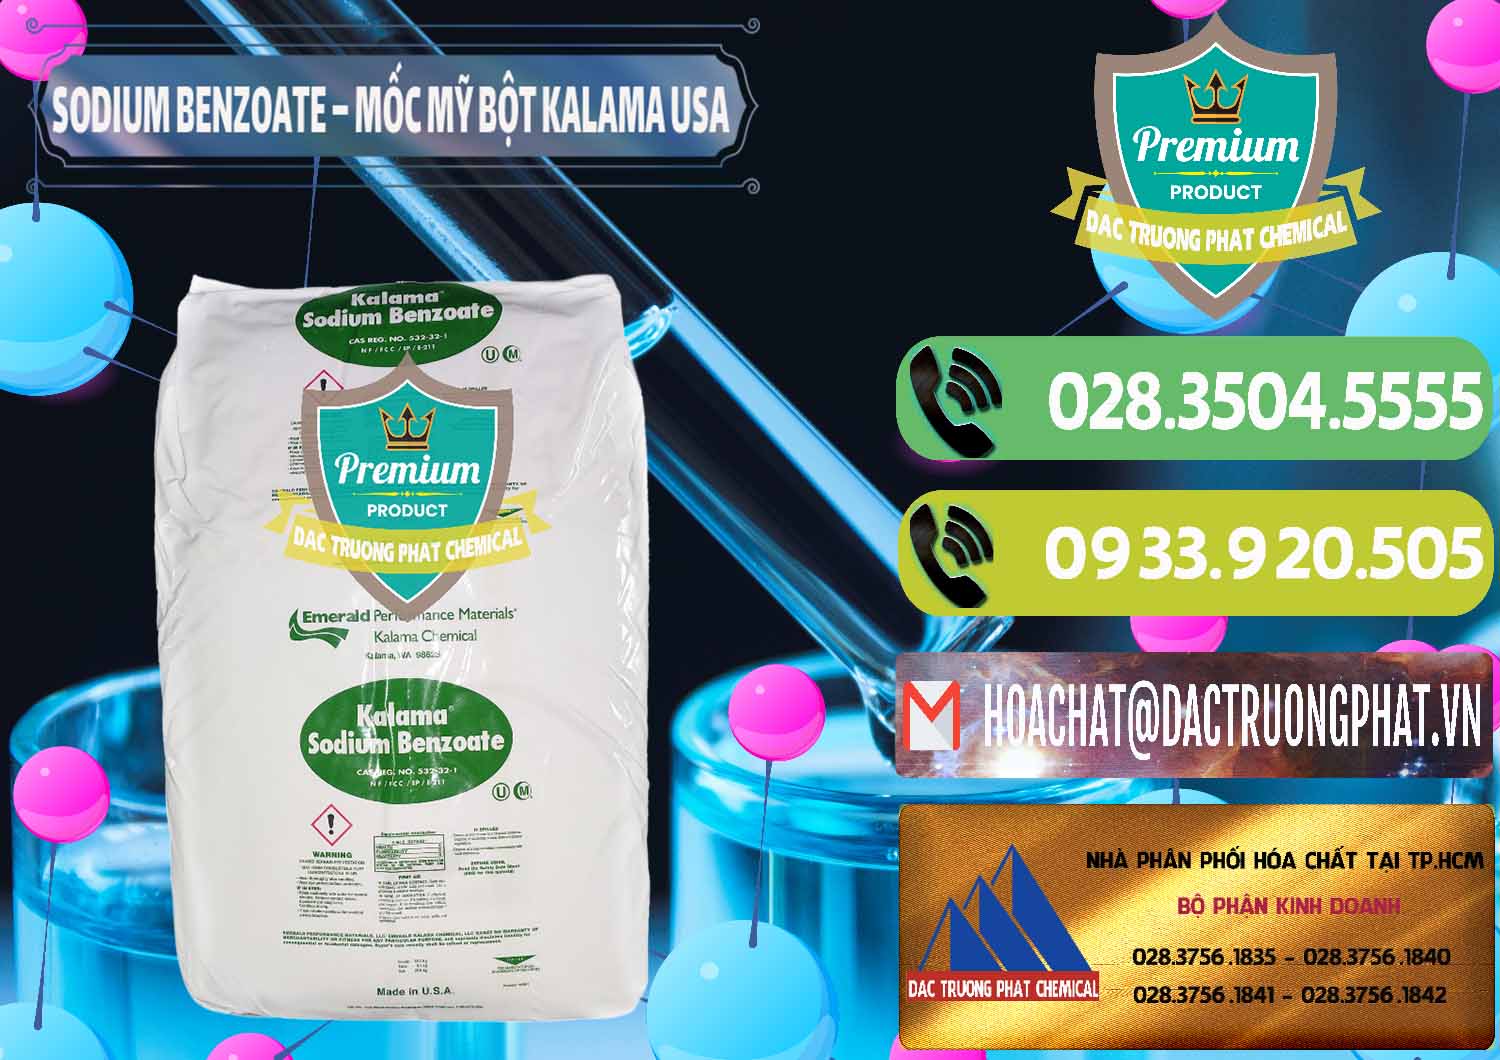 Đơn vị bán và cung cấp Sodium Benzoate - Mốc Bột Kalama Food Grade Mỹ Usa - 0136 - Nơi cung cấp & bán hóa chất tại TP.HCM - hoachatmientay.vn